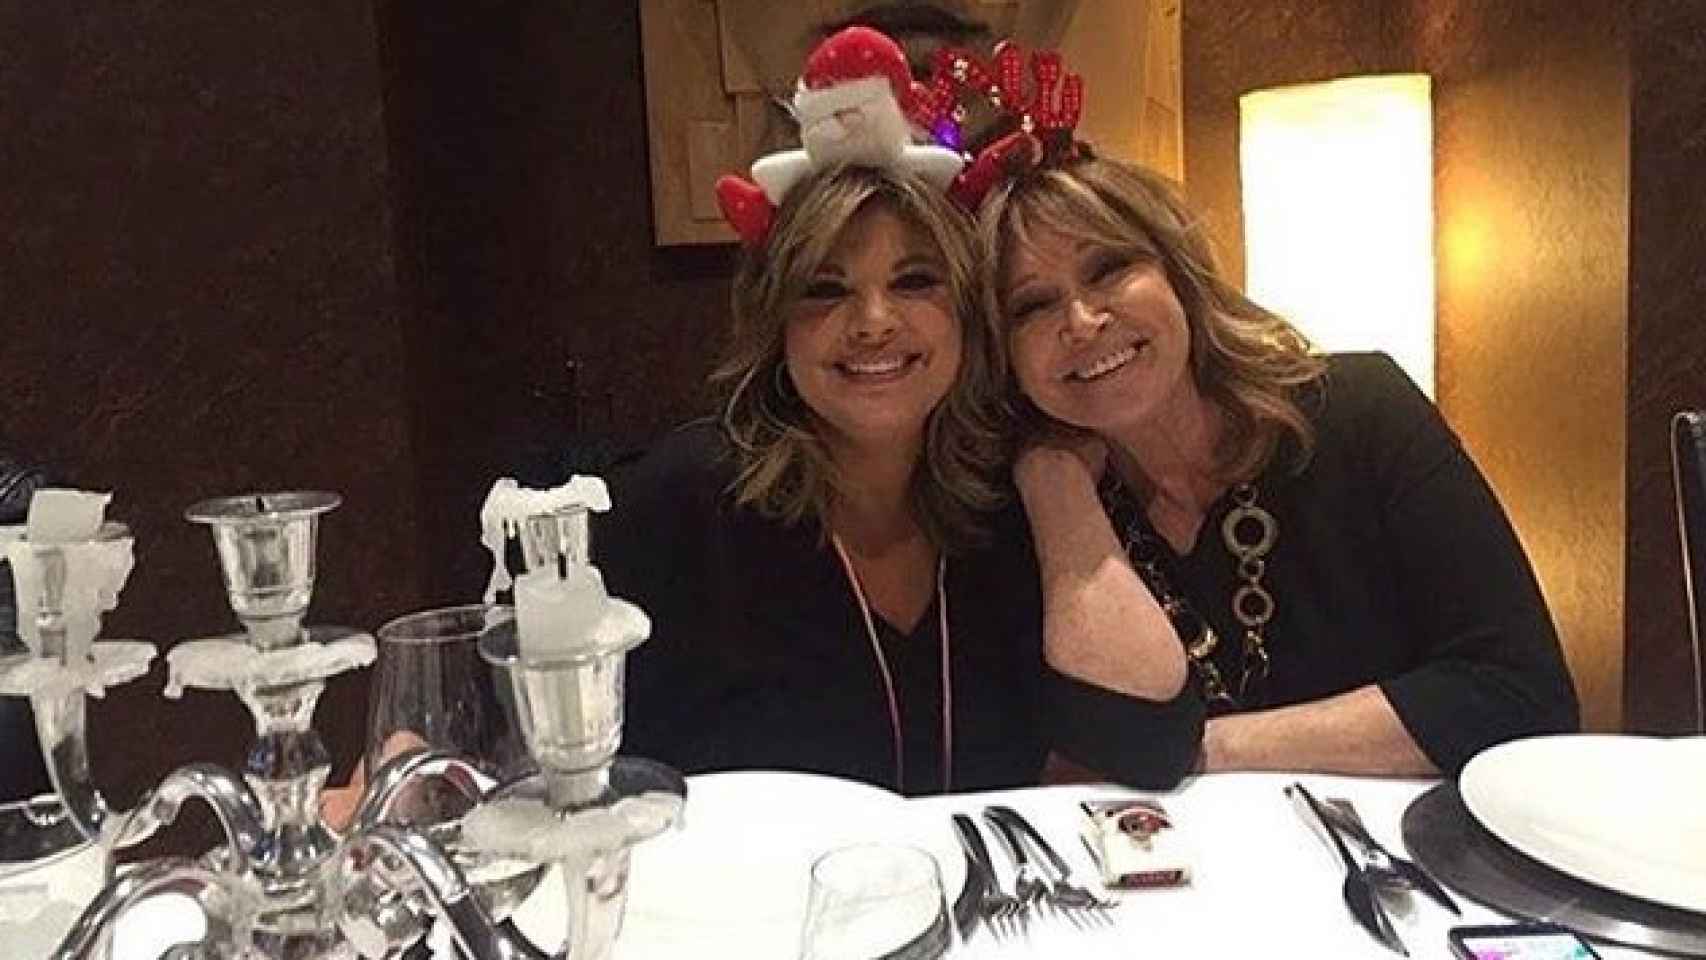 Terelu Campos y Mila Ximénez festejan la Navidad con diademas navideñas